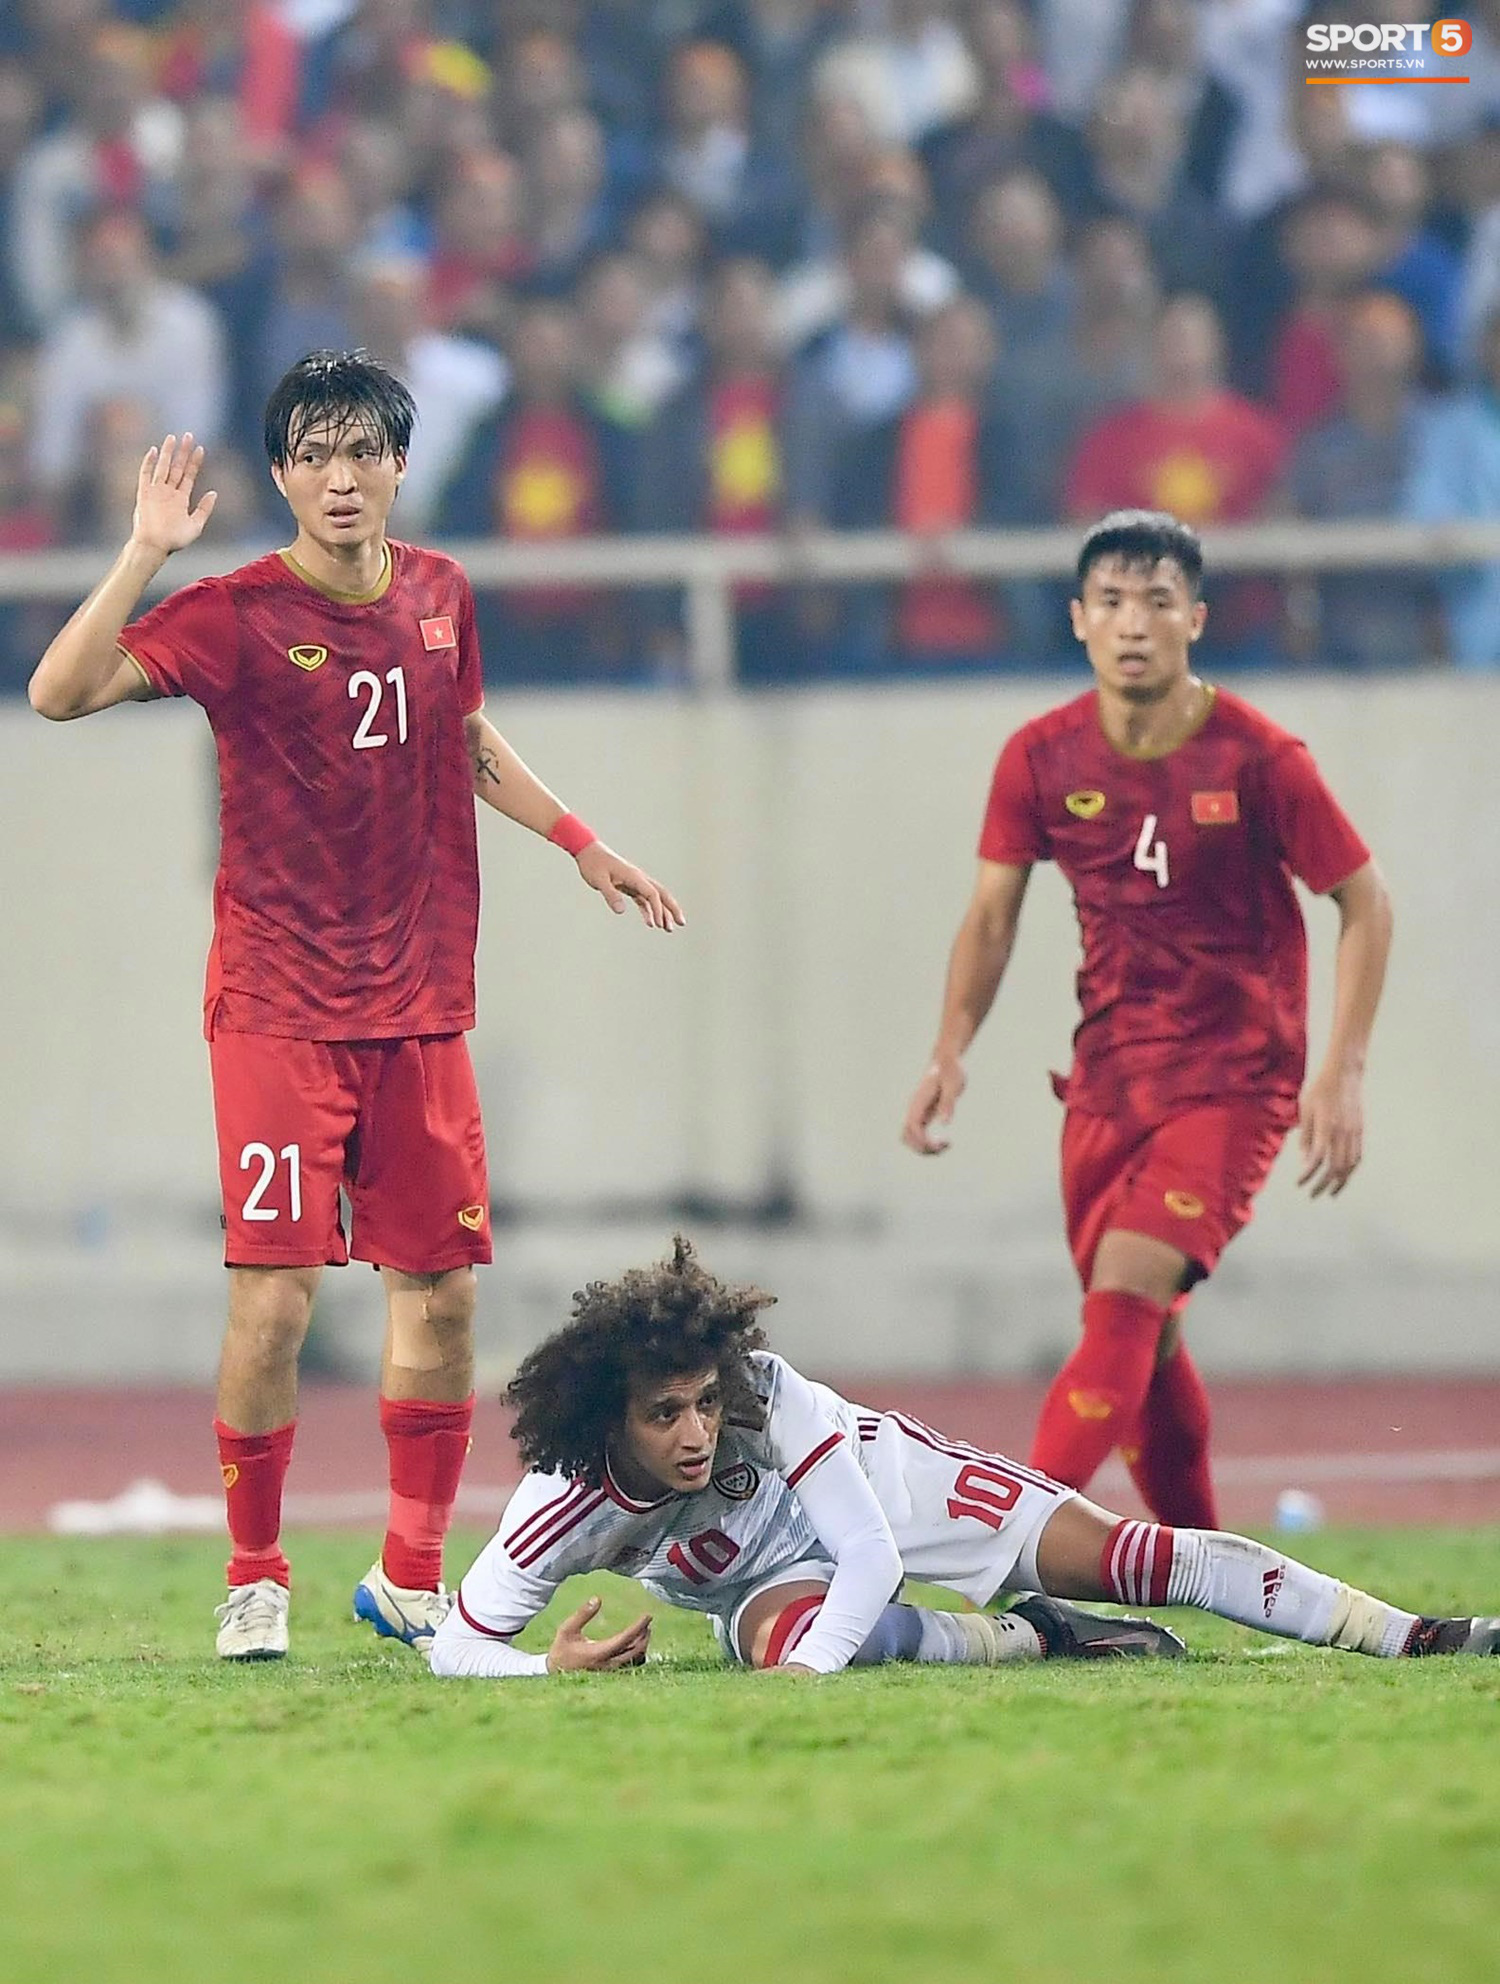 Tuấn Anh: Cầu thủ có đôi chân pha lê vô hiệu hóa cầu thủ UAE hay nhất